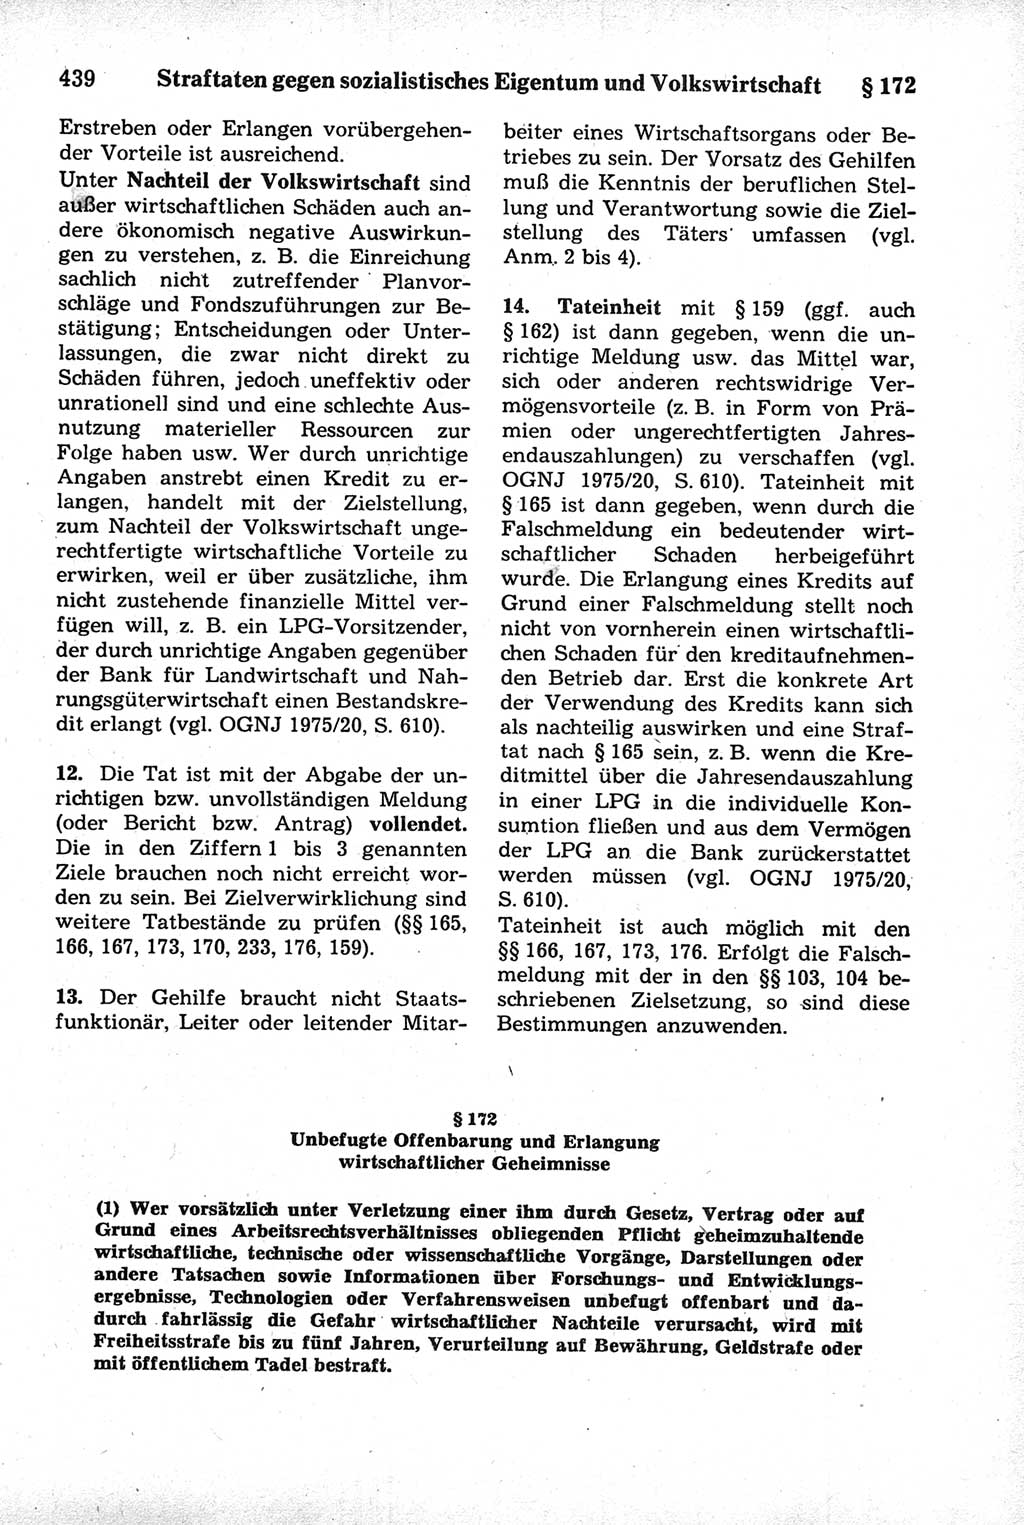 Strafrecht der Deutschen Demokratischen Republik (DDR), Kommentar zum Strafgesetzbuch (StGB) 1981, Seite 439 (Strafr. DDR Komm. StGB 1981, S. 439)